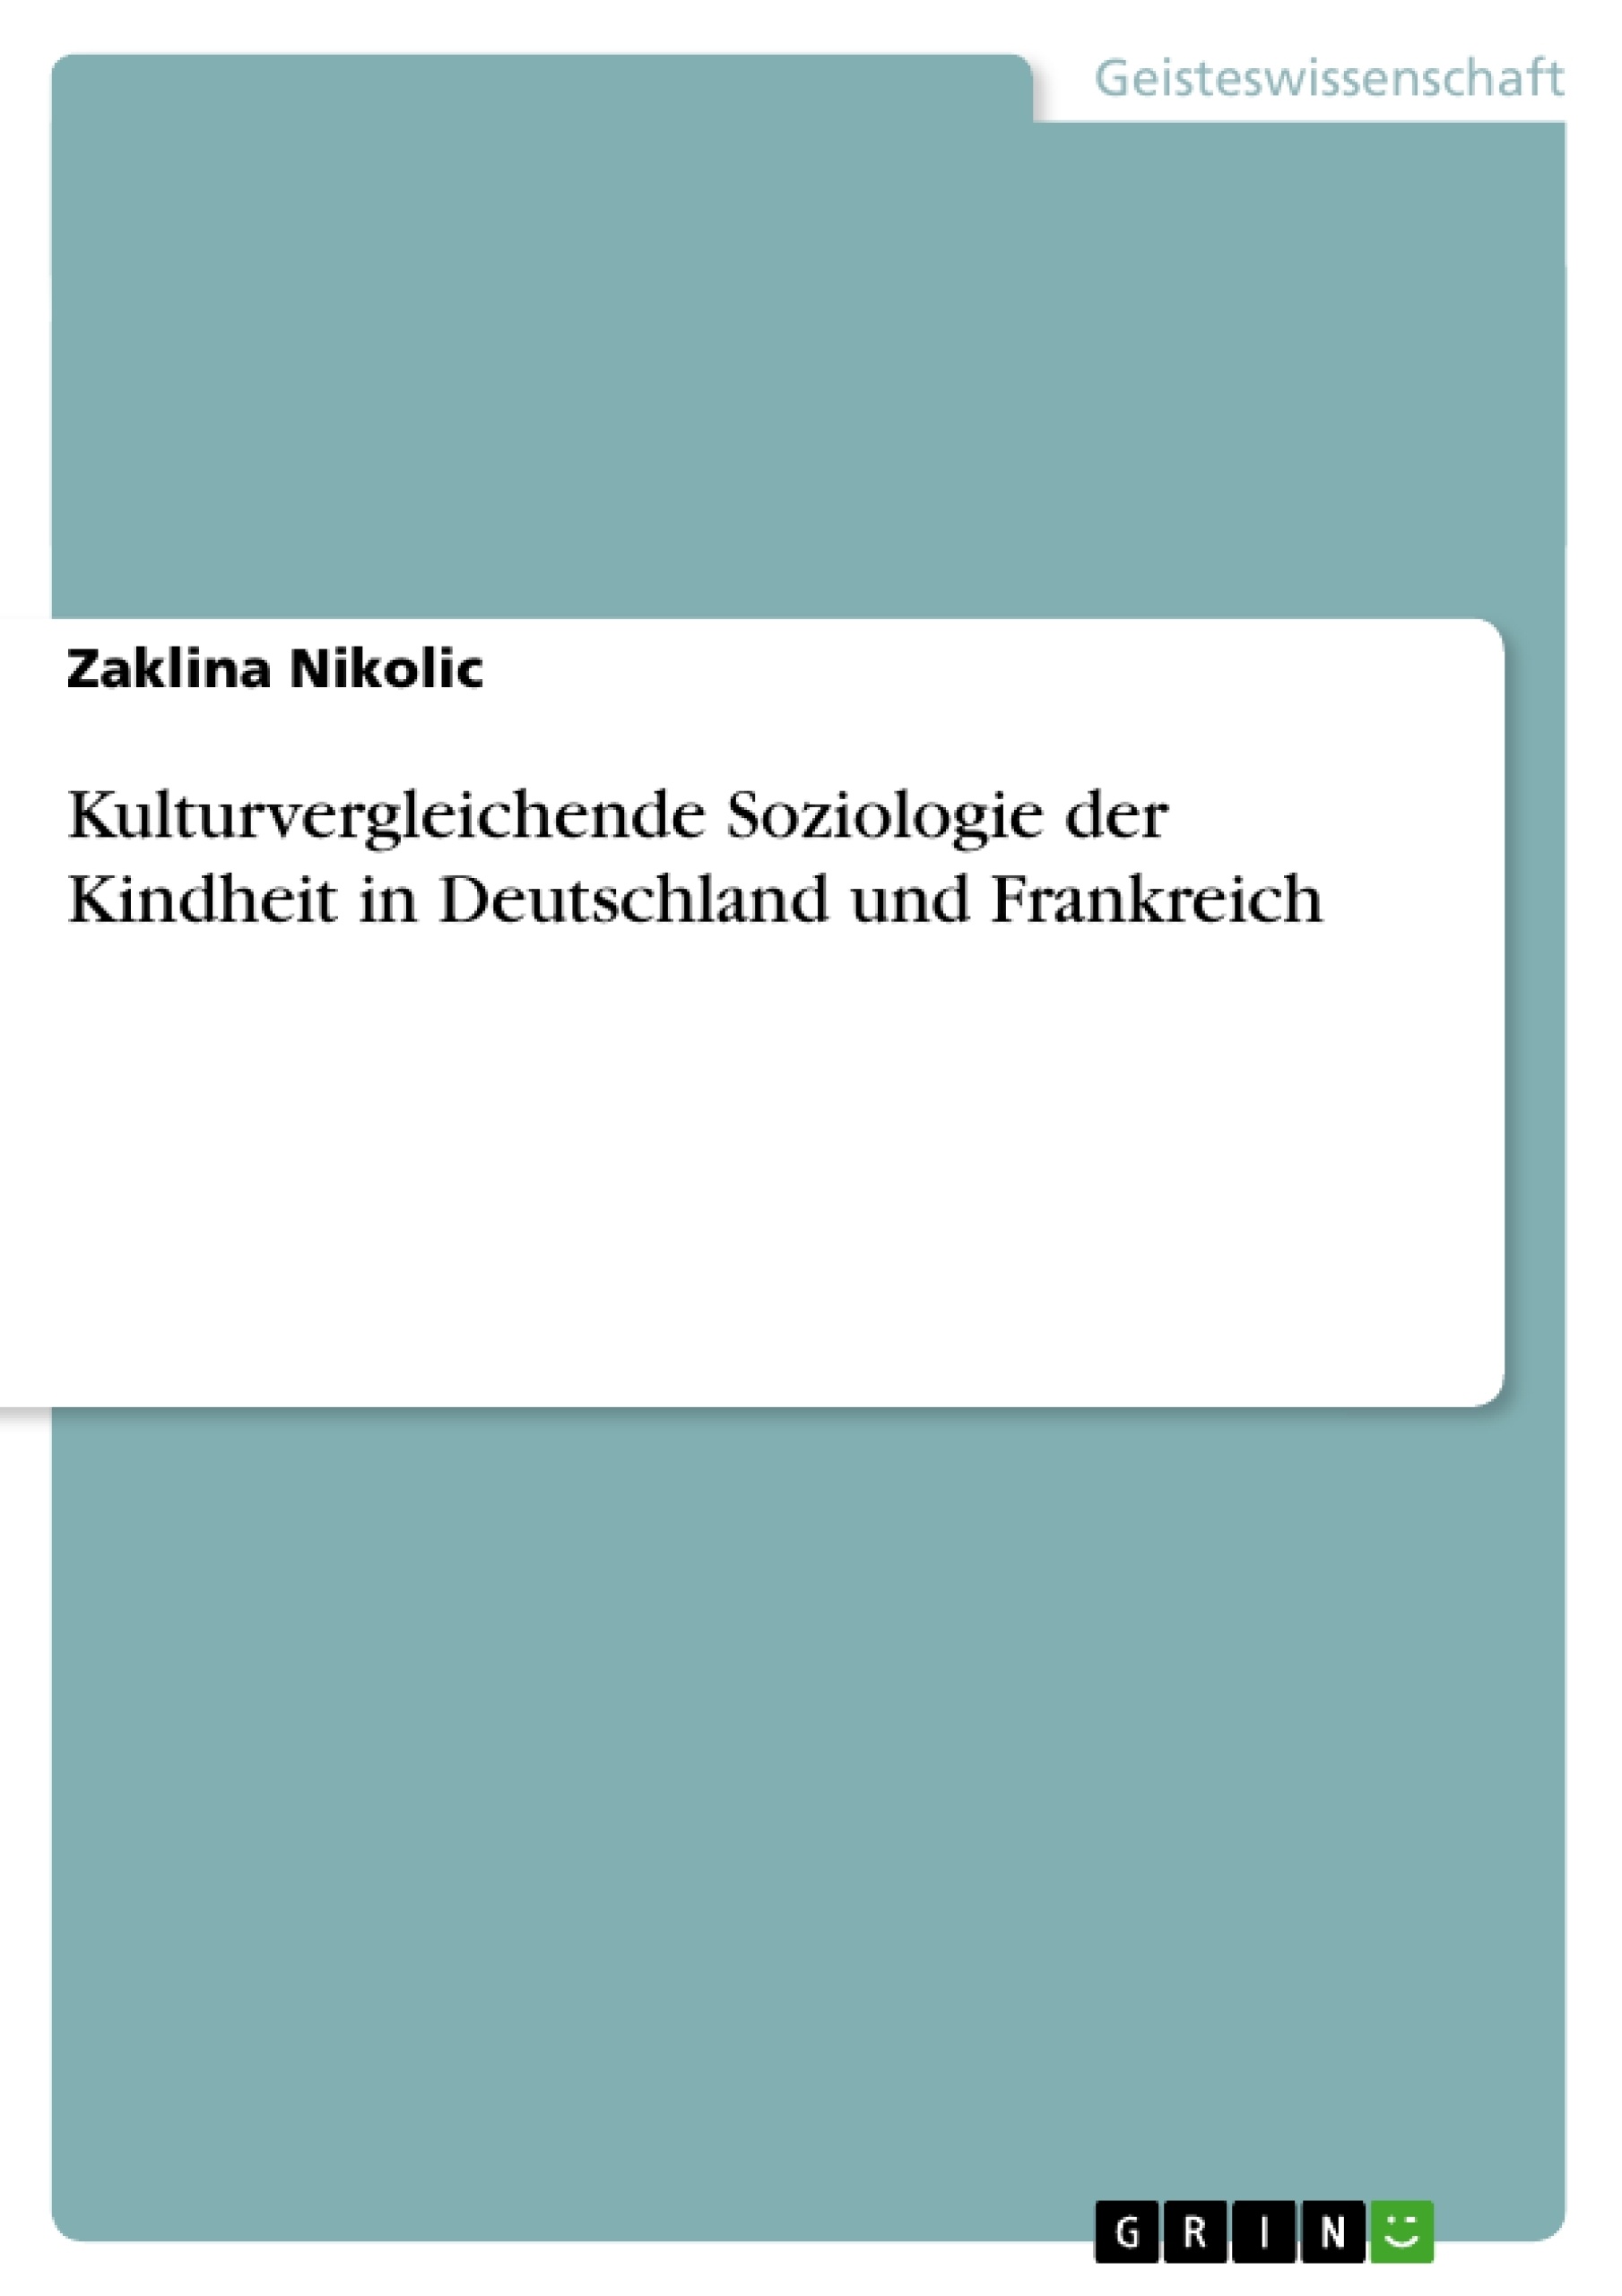 Title: Kulturvergleichende Soziologie der Kindheit in Deutschland und Frankreich